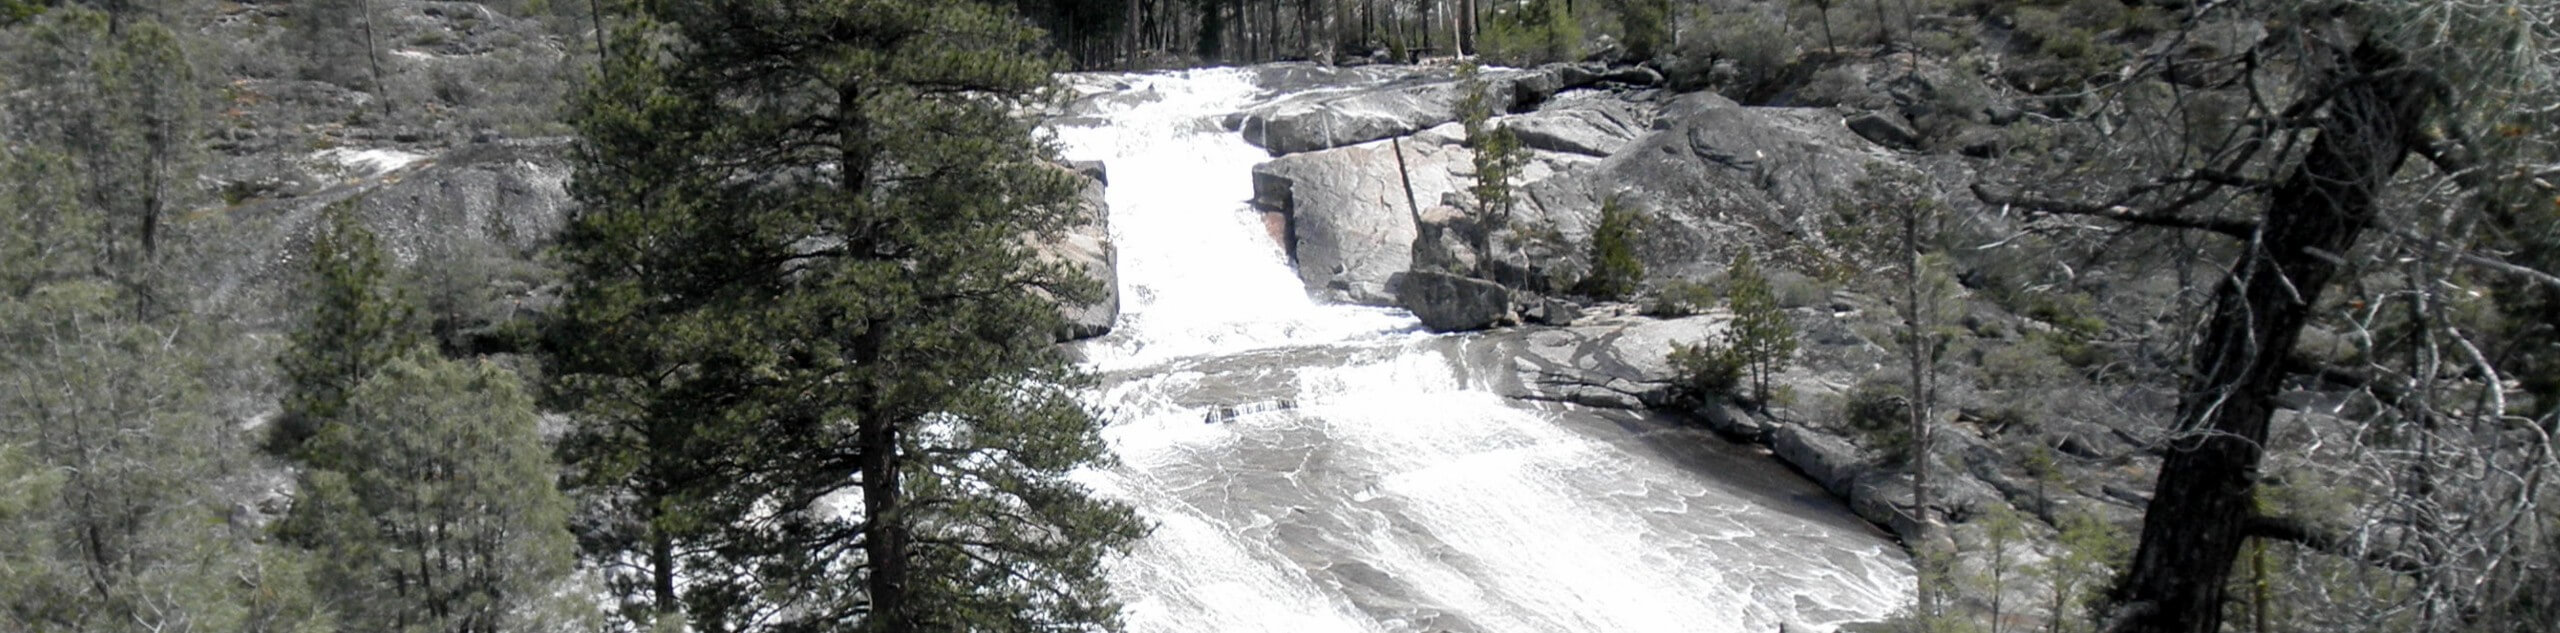 Rancheria Falls Trail